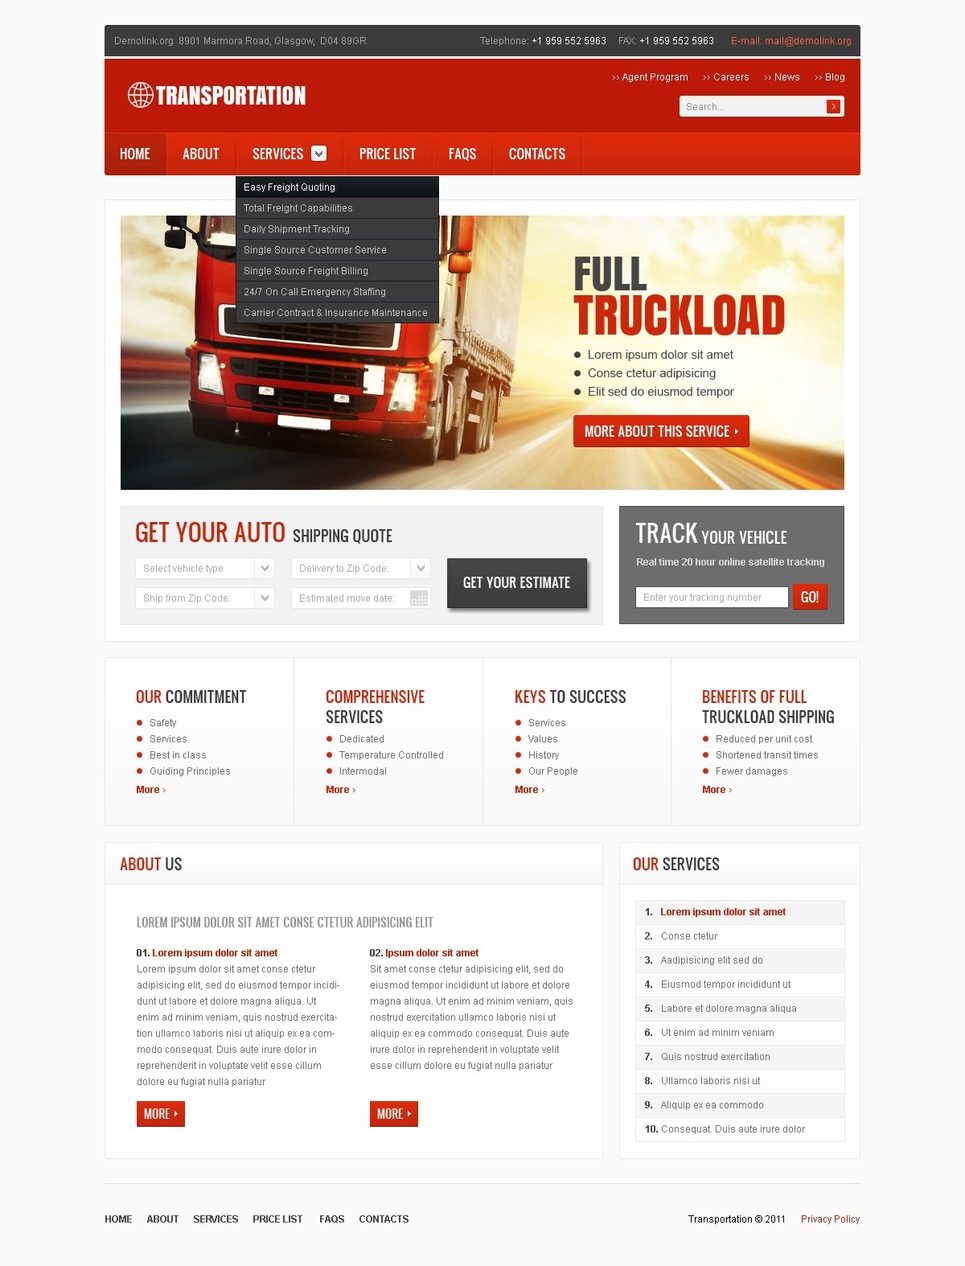 Trucking Website Template #36403